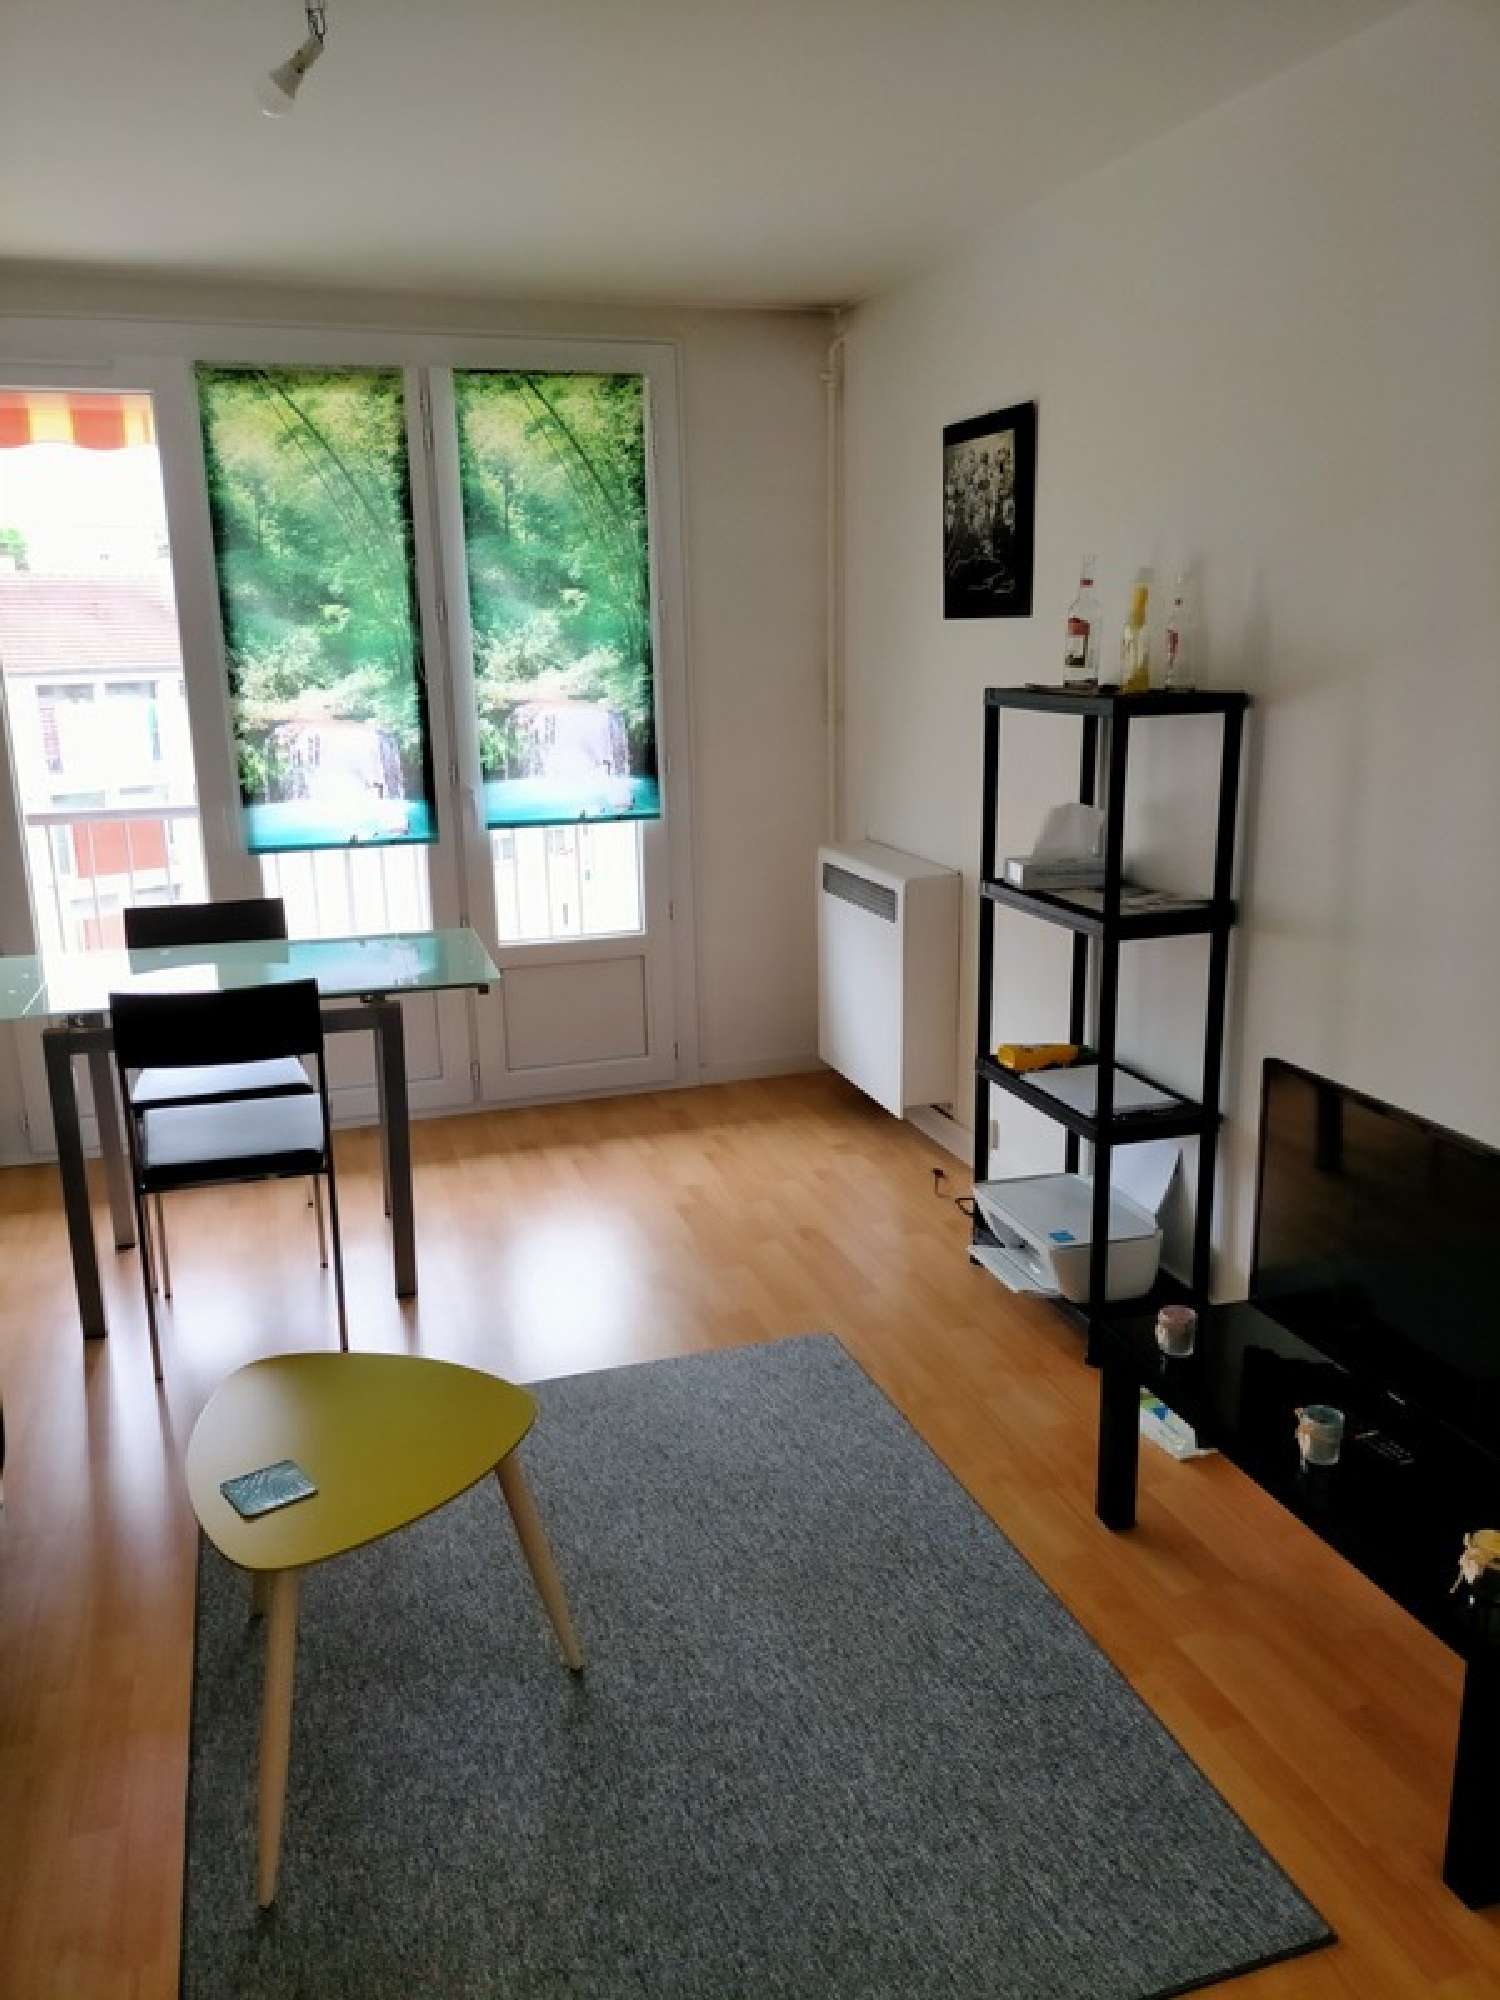  for sale apartment Limoges Haute-Vienne 2